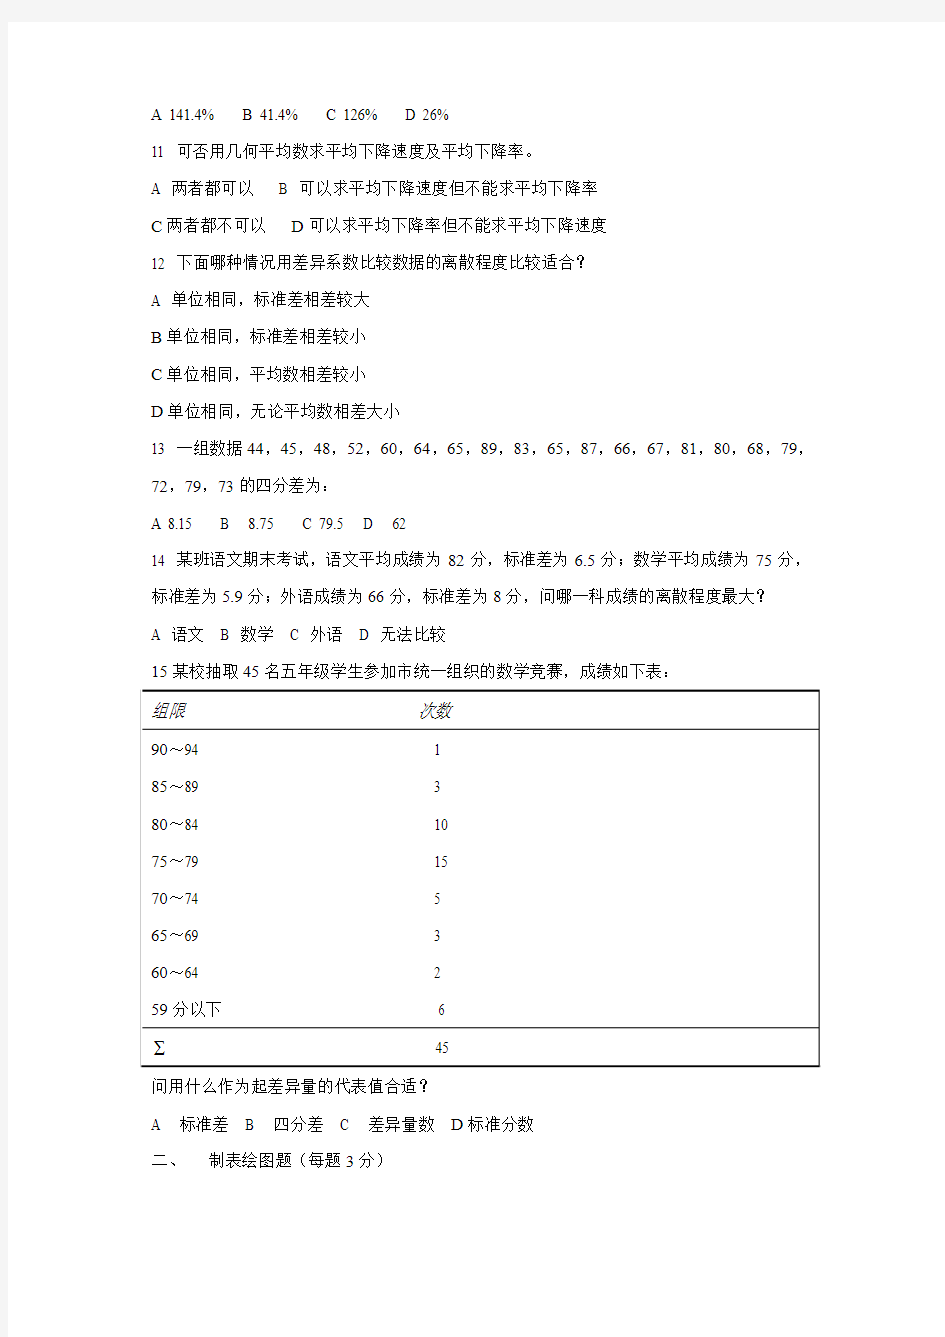 《心里统计学》作业 - 北京师范大学 网络教育